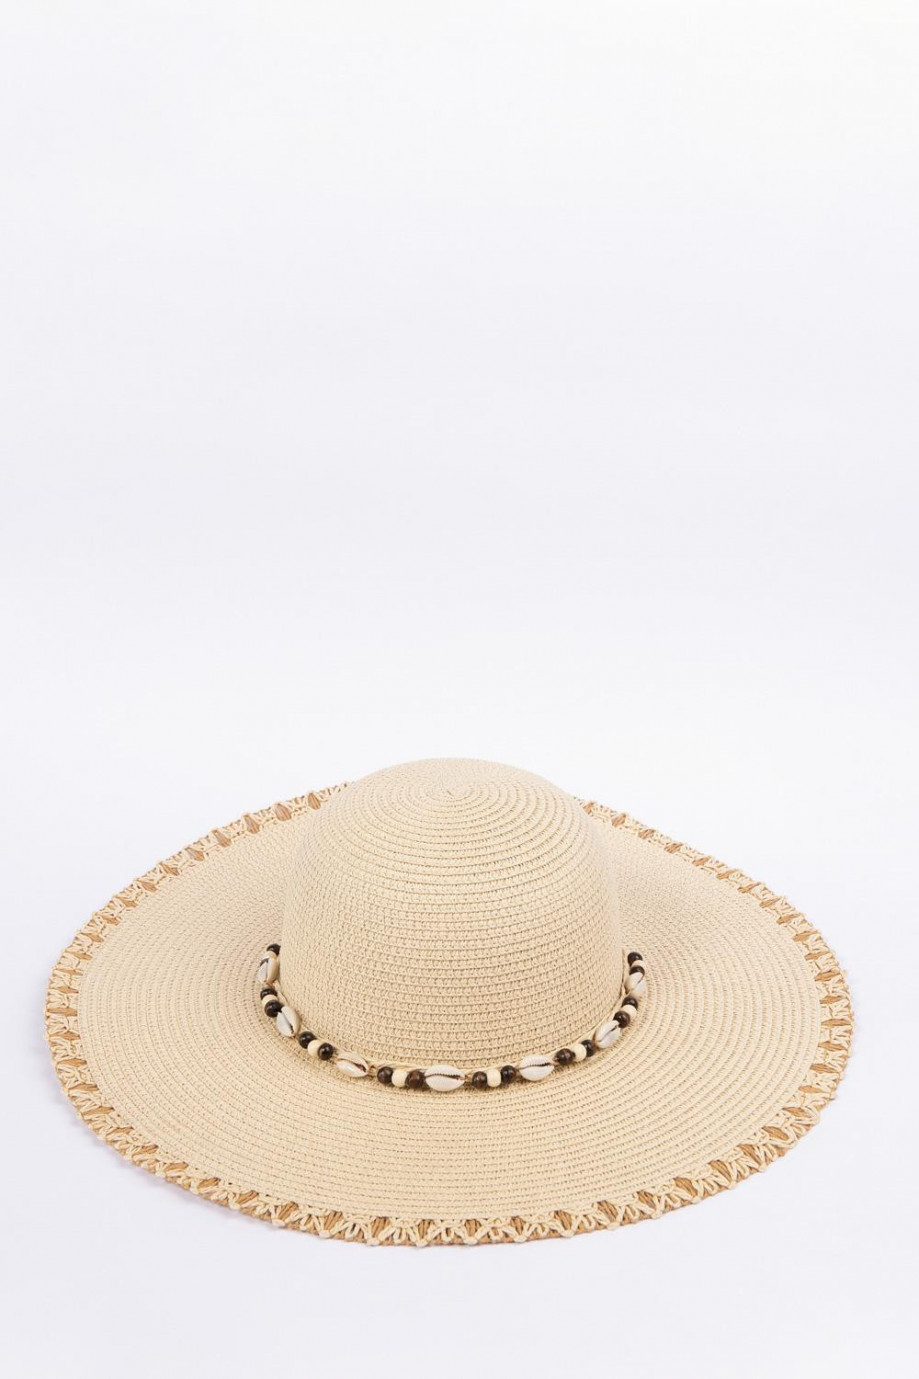 Sombrero kaky claro tejido con detalles decorativos y ala ancha